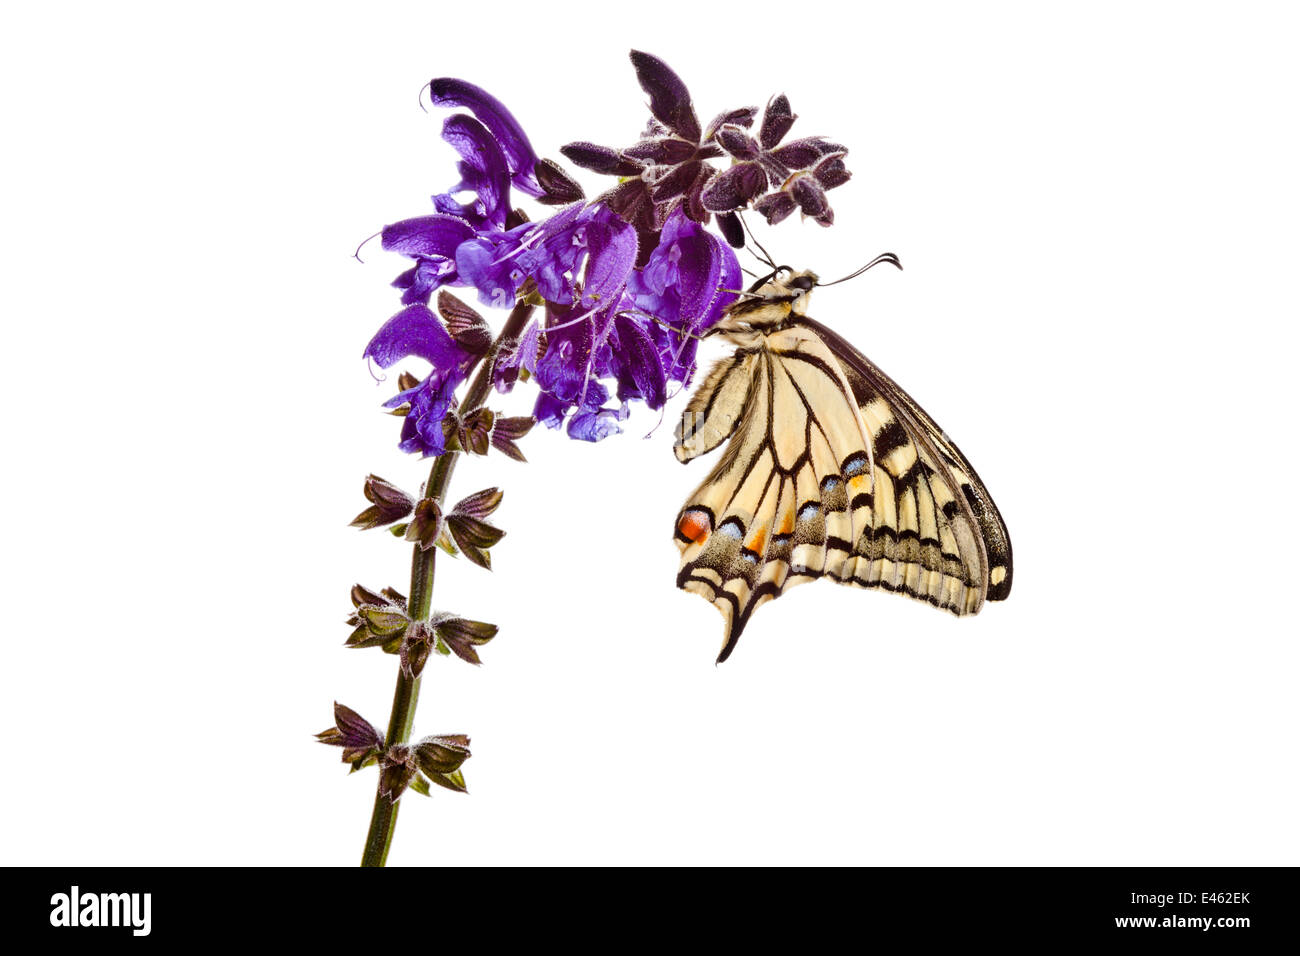 A coda di rondine comune butterfly (Papilio machaon) appoggiato sul prato Clary (Salvia pratensis) fiori, su uno sfondo bianco. Nordtirol, Tirol, Alpi austriache, Austria, 1700 metri di altitudine, Luglio. Foto Stock